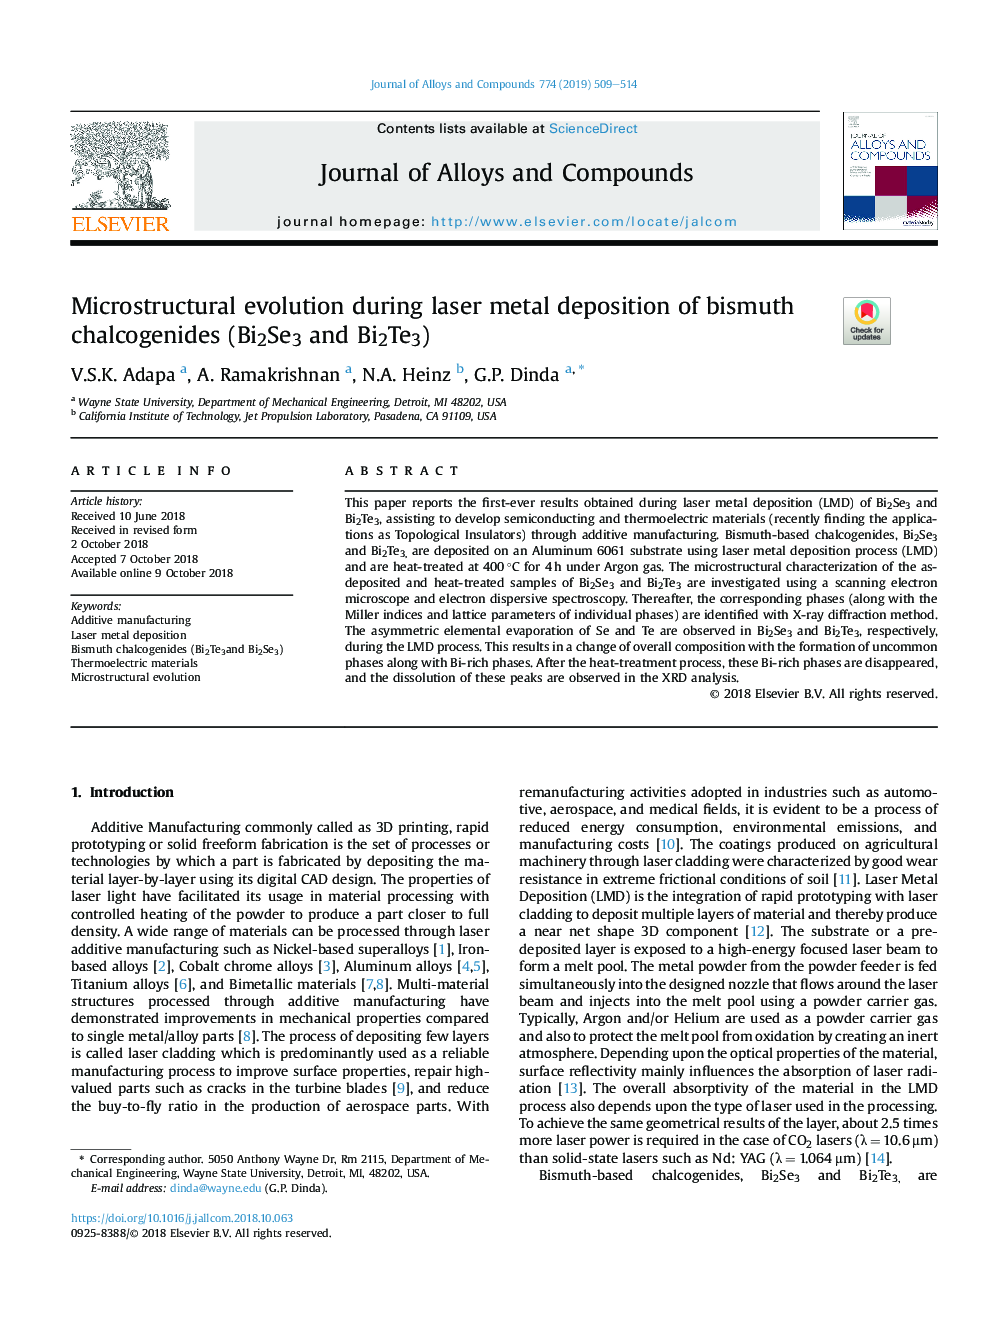 Microstructural evolution during laser metal deposition of bismuth chalcogenides (Bi2Se3 and Bi2Te3)